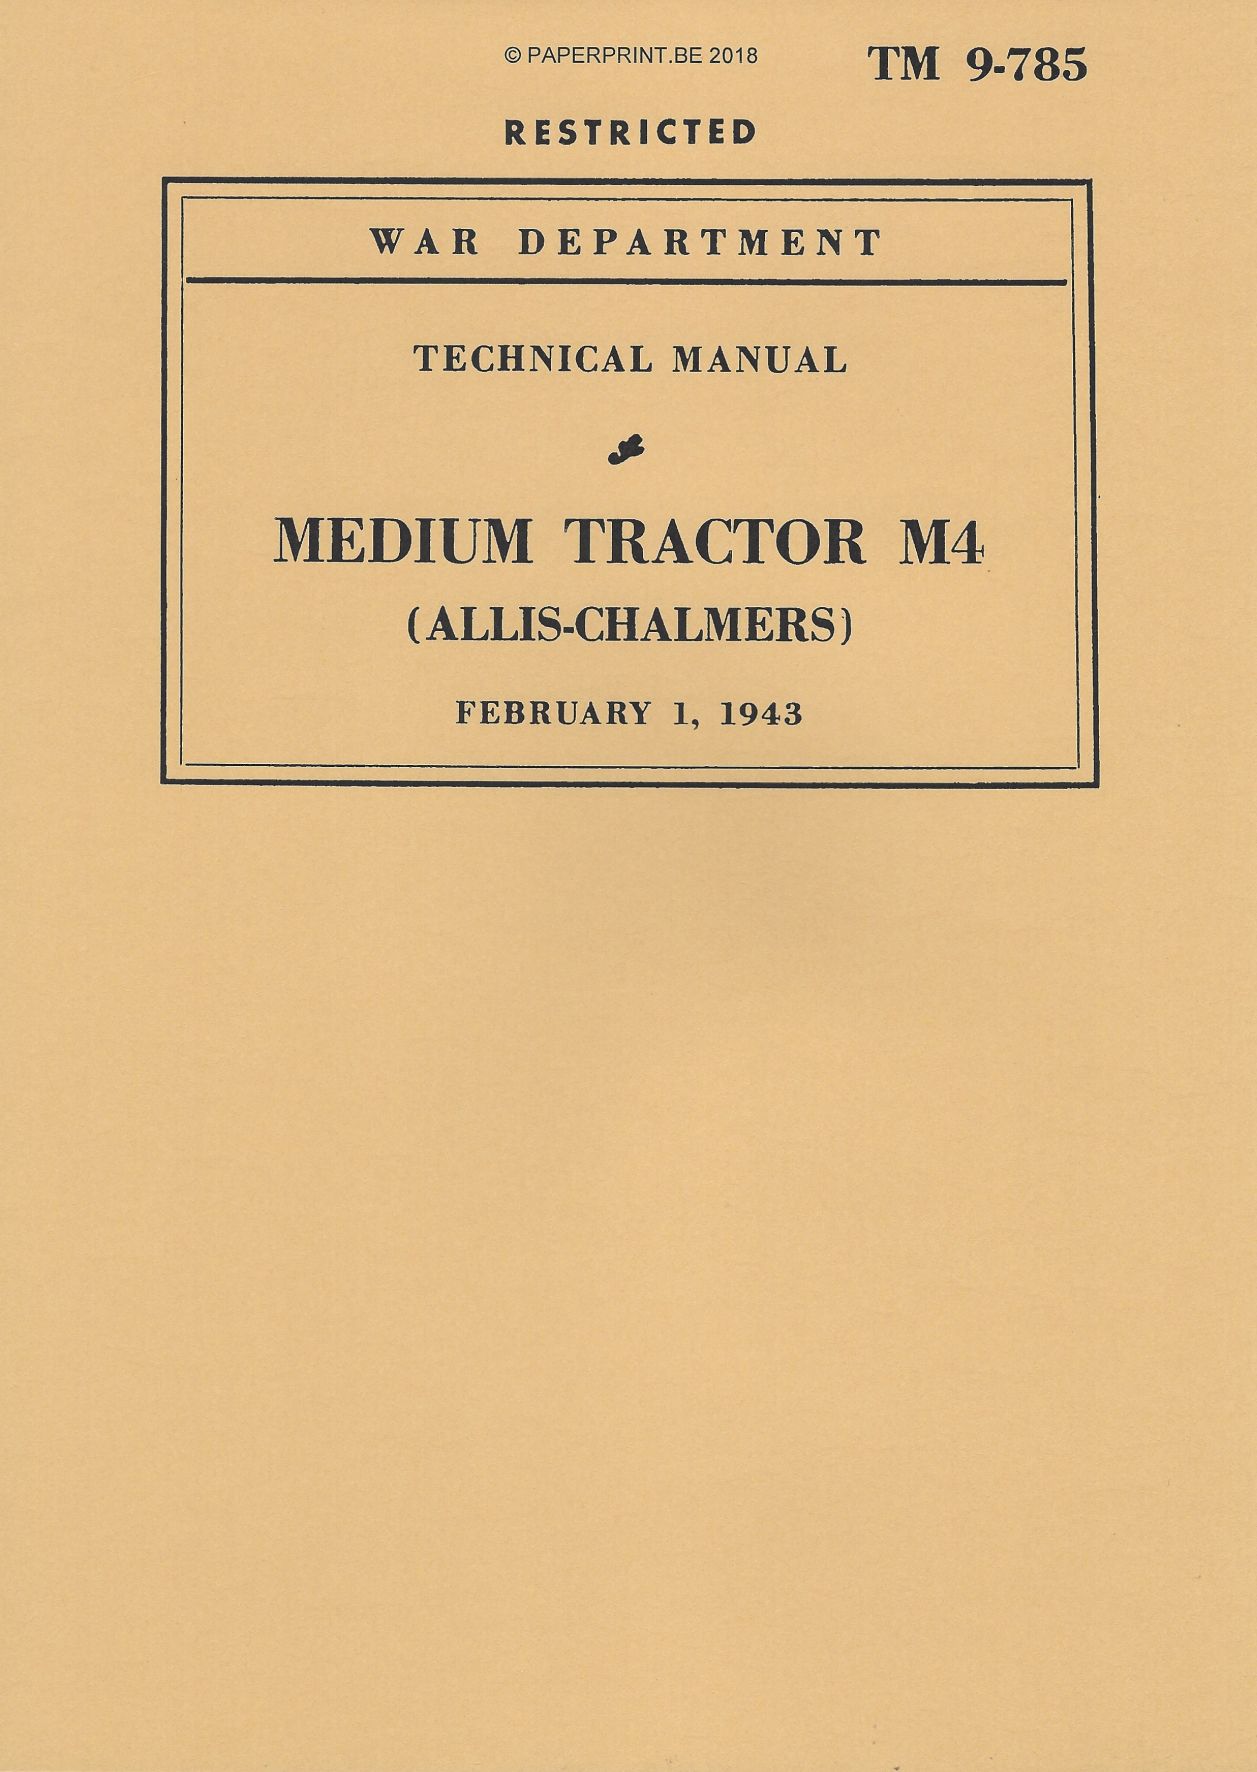 TM 9-785 US ALLIS-CHALMERS MEDIUM TRACTOR M4